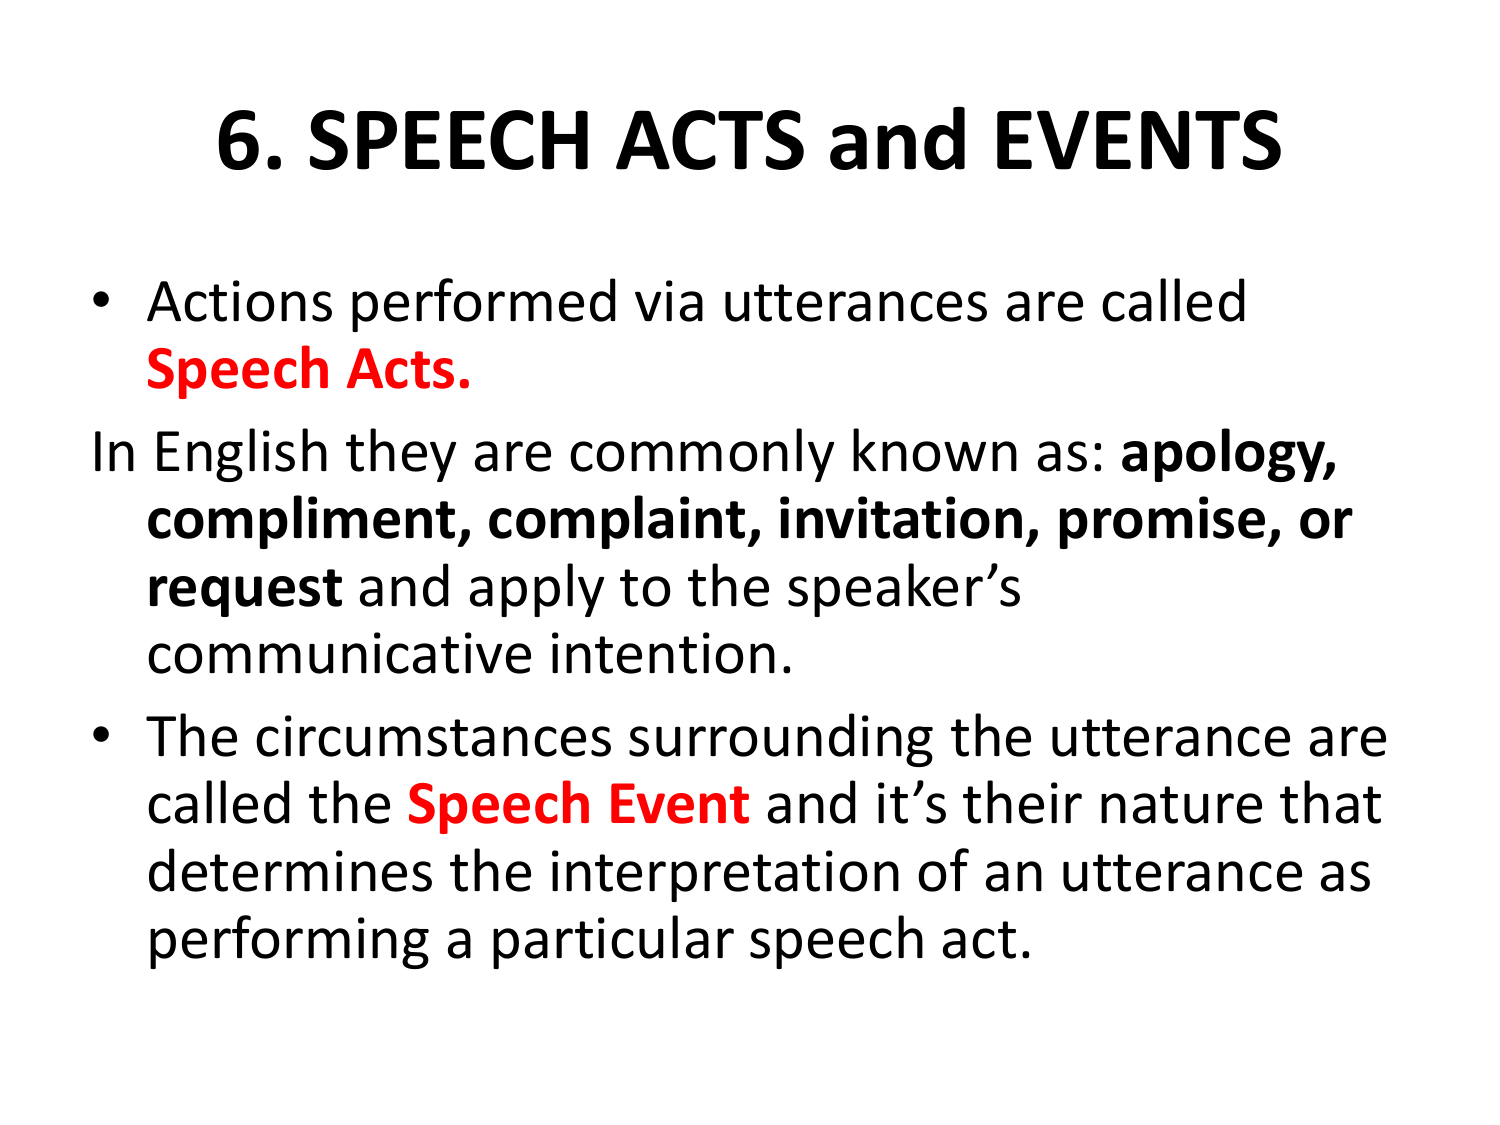 type of a speech act